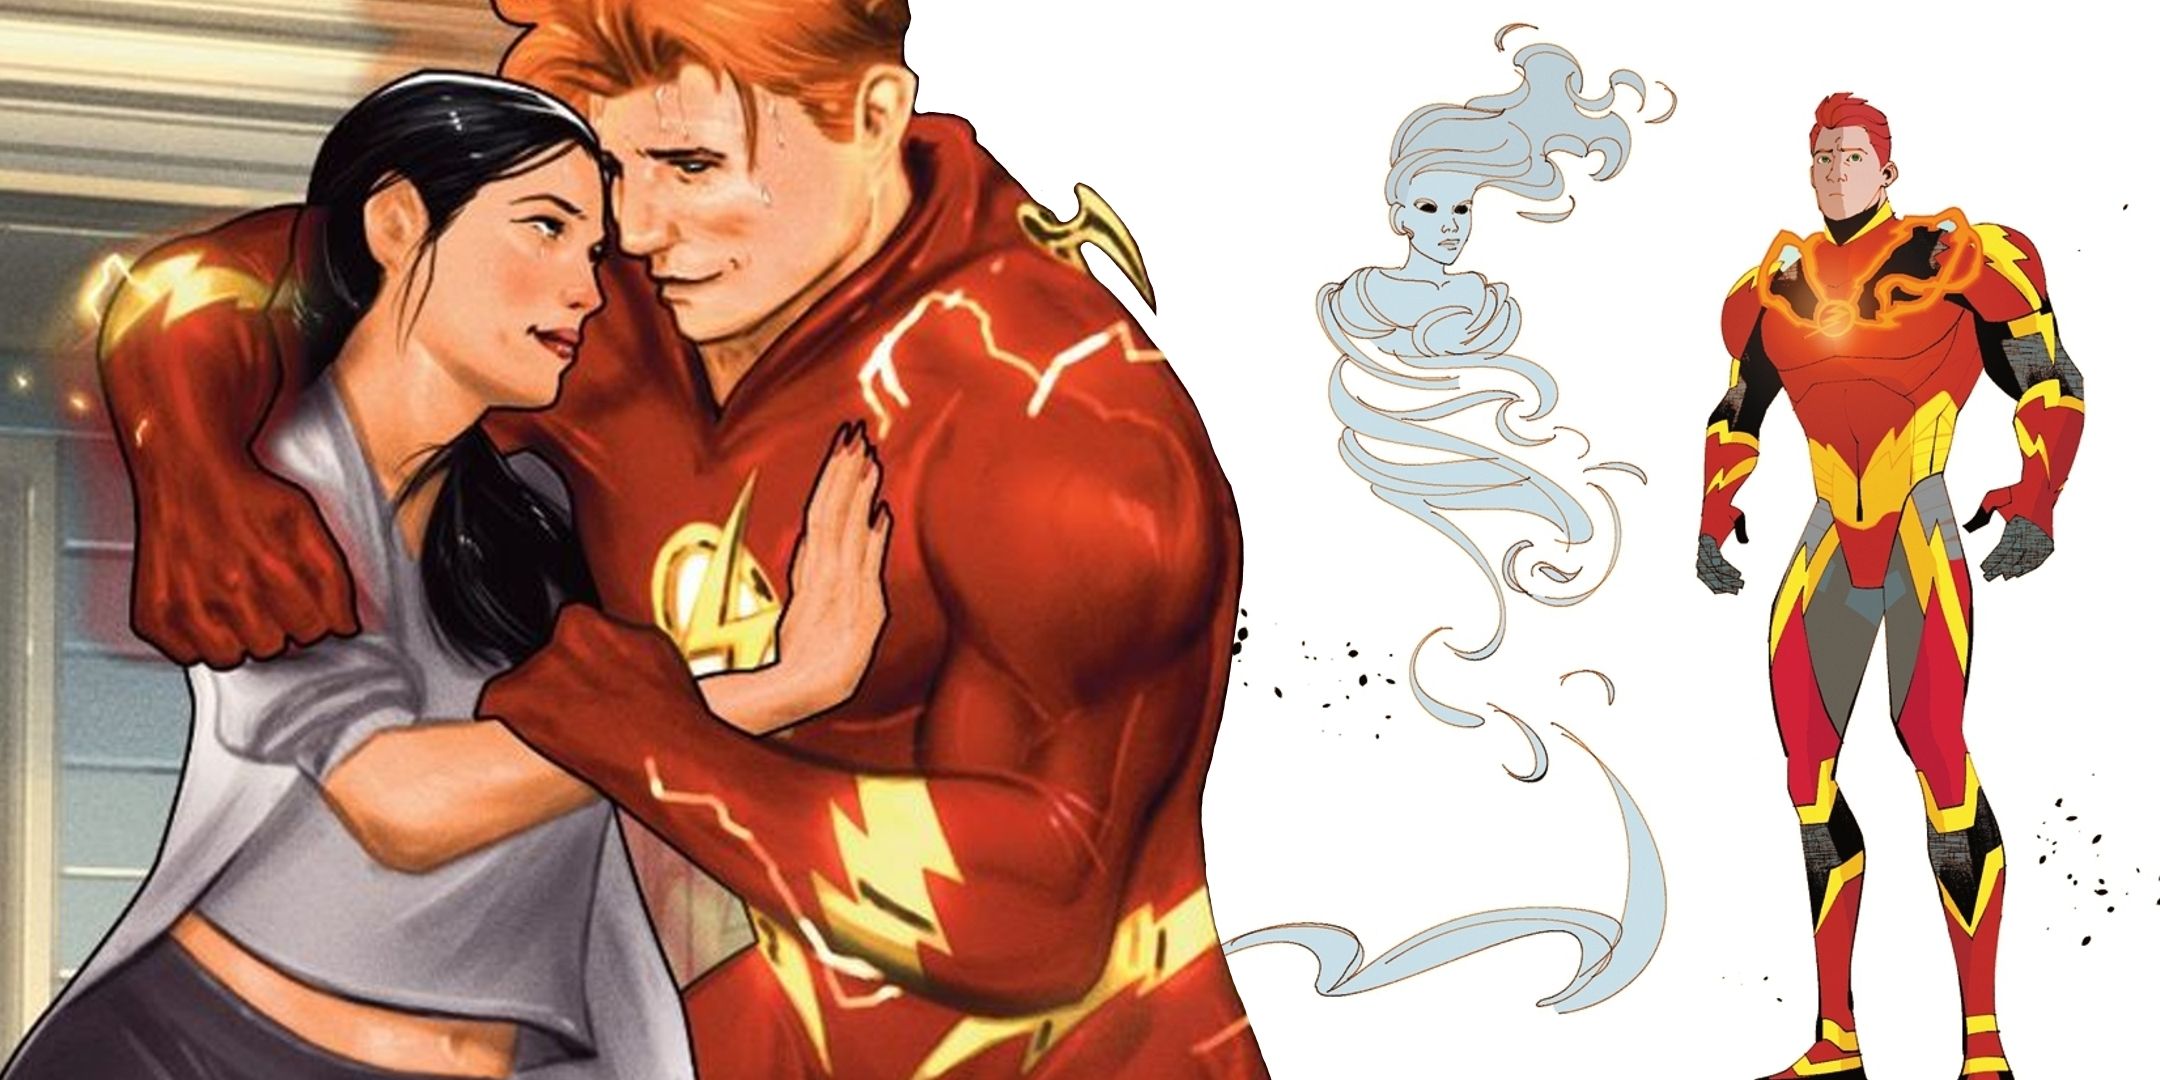 La familia de Flash se desmorona por completo, alterando para siempre a la familia de héroes más cercana de DC